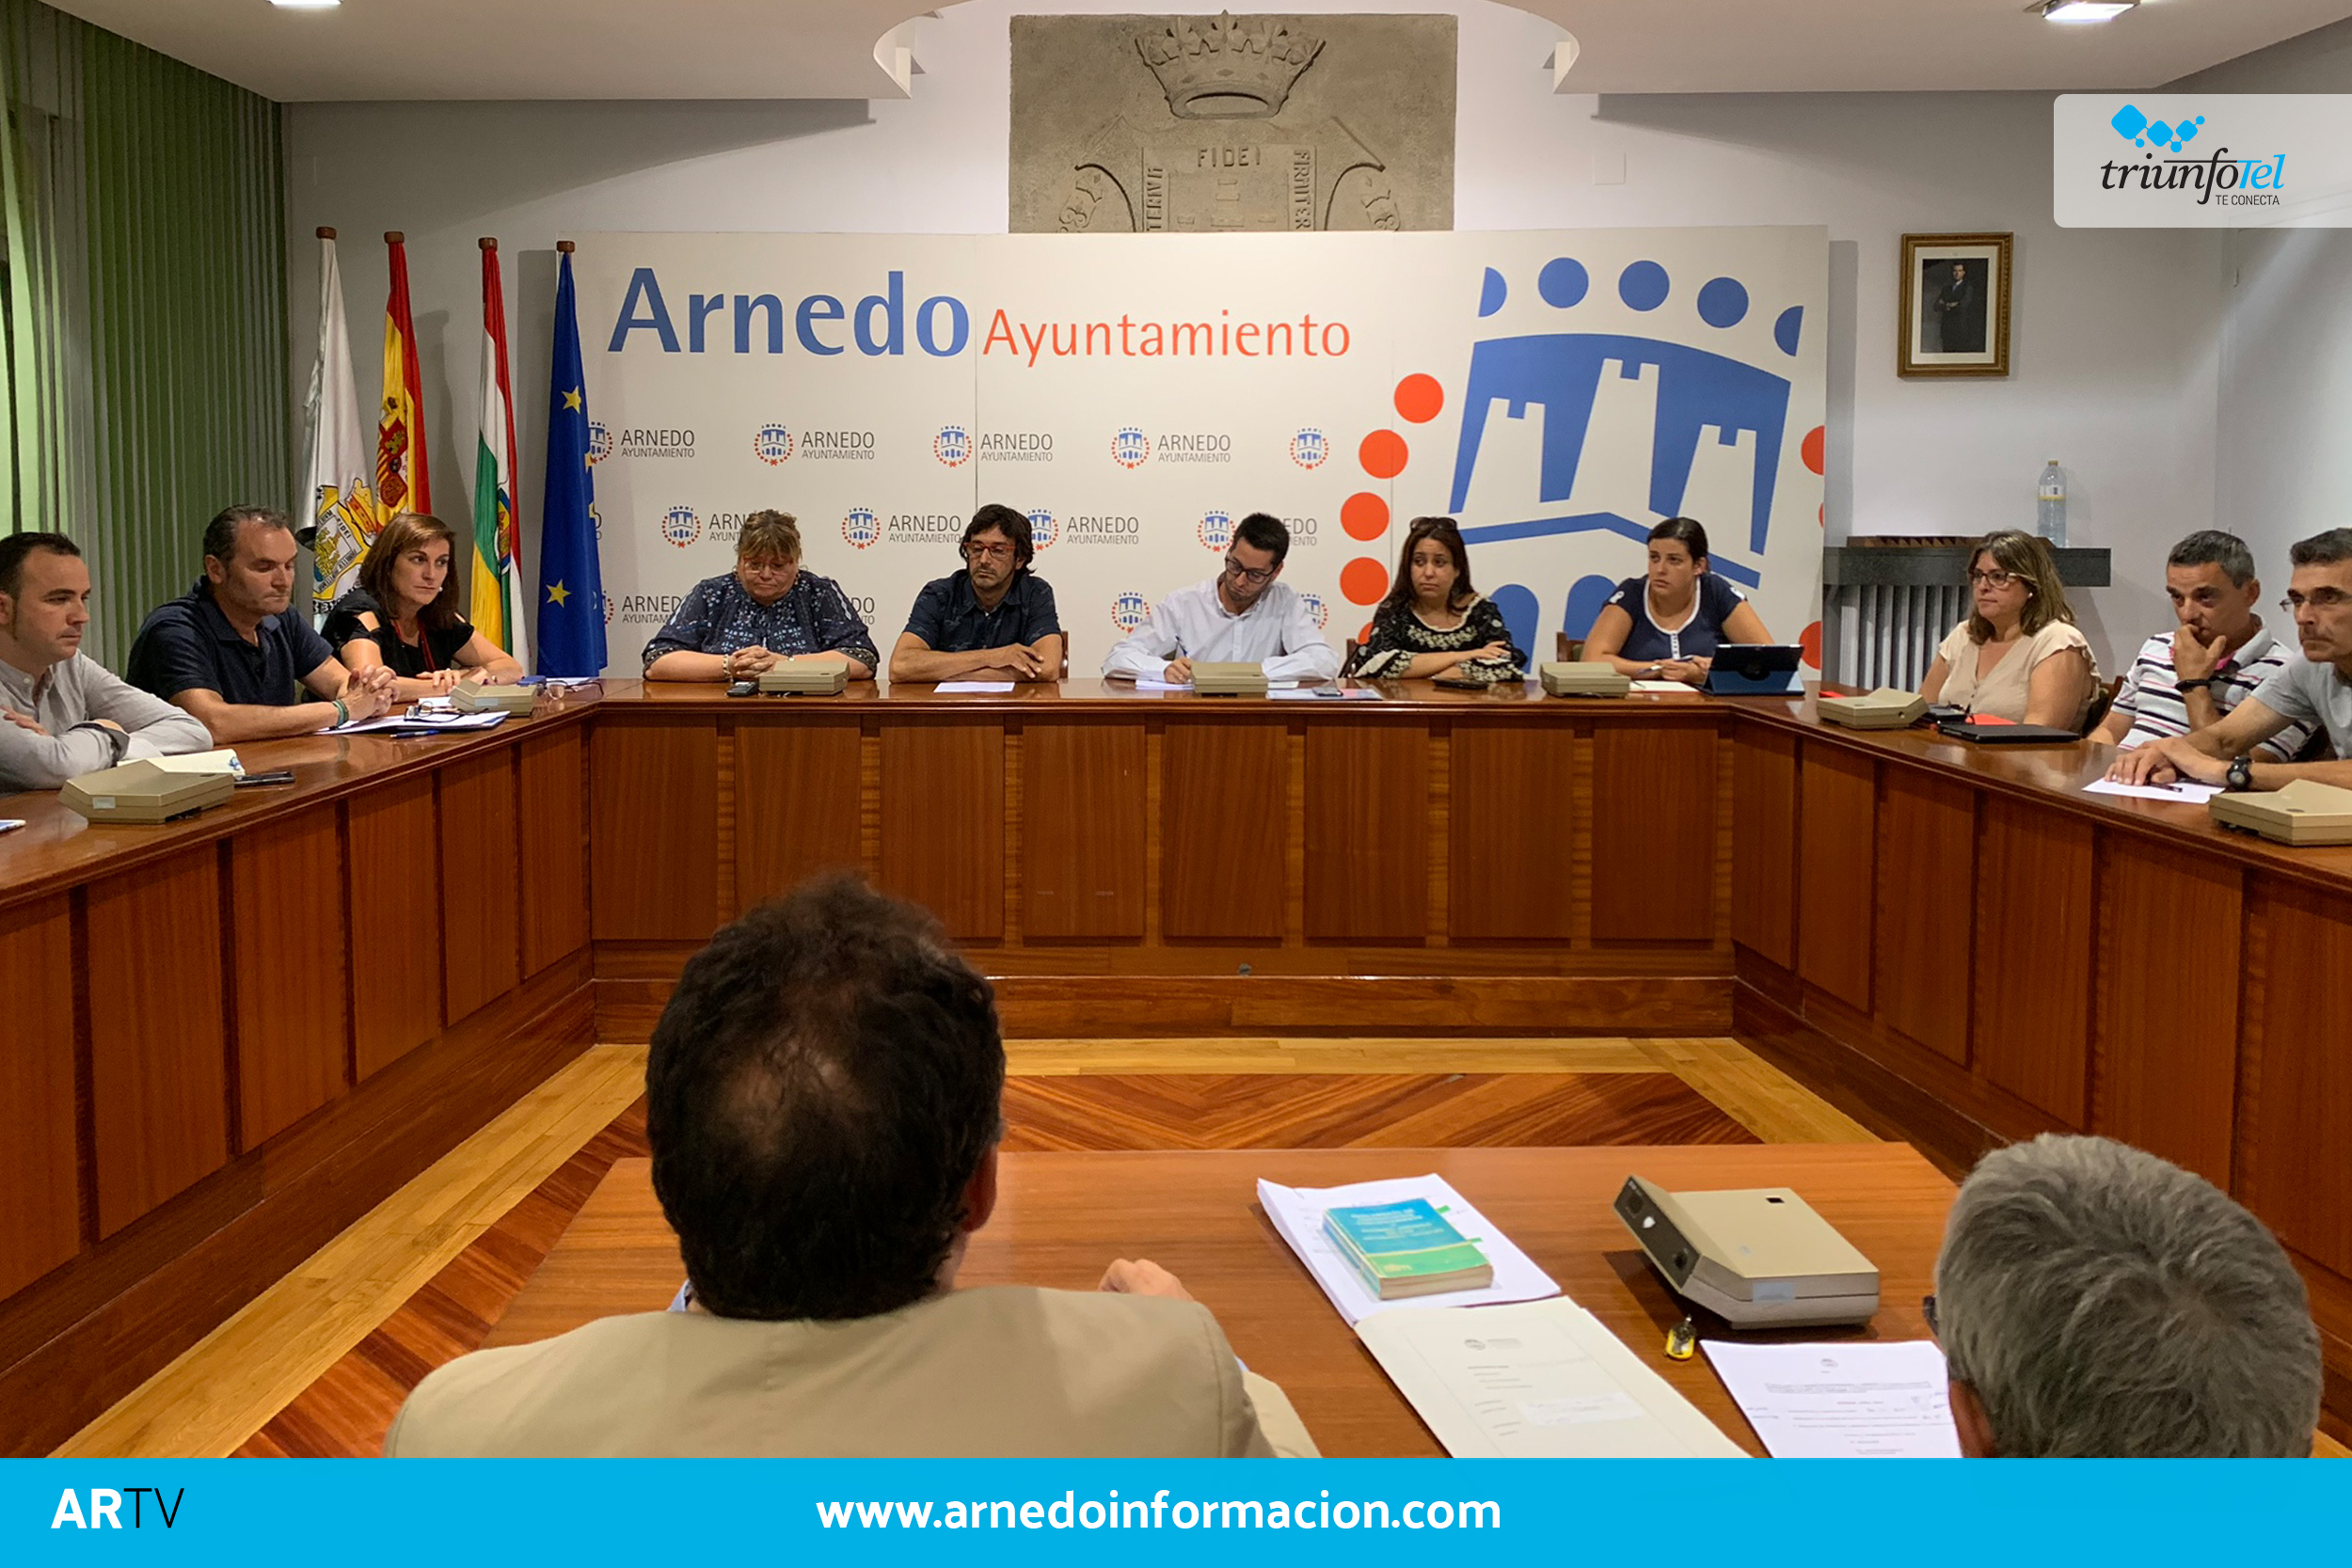 Pleno extraordinario en el Ayuntamiento de Arnedo